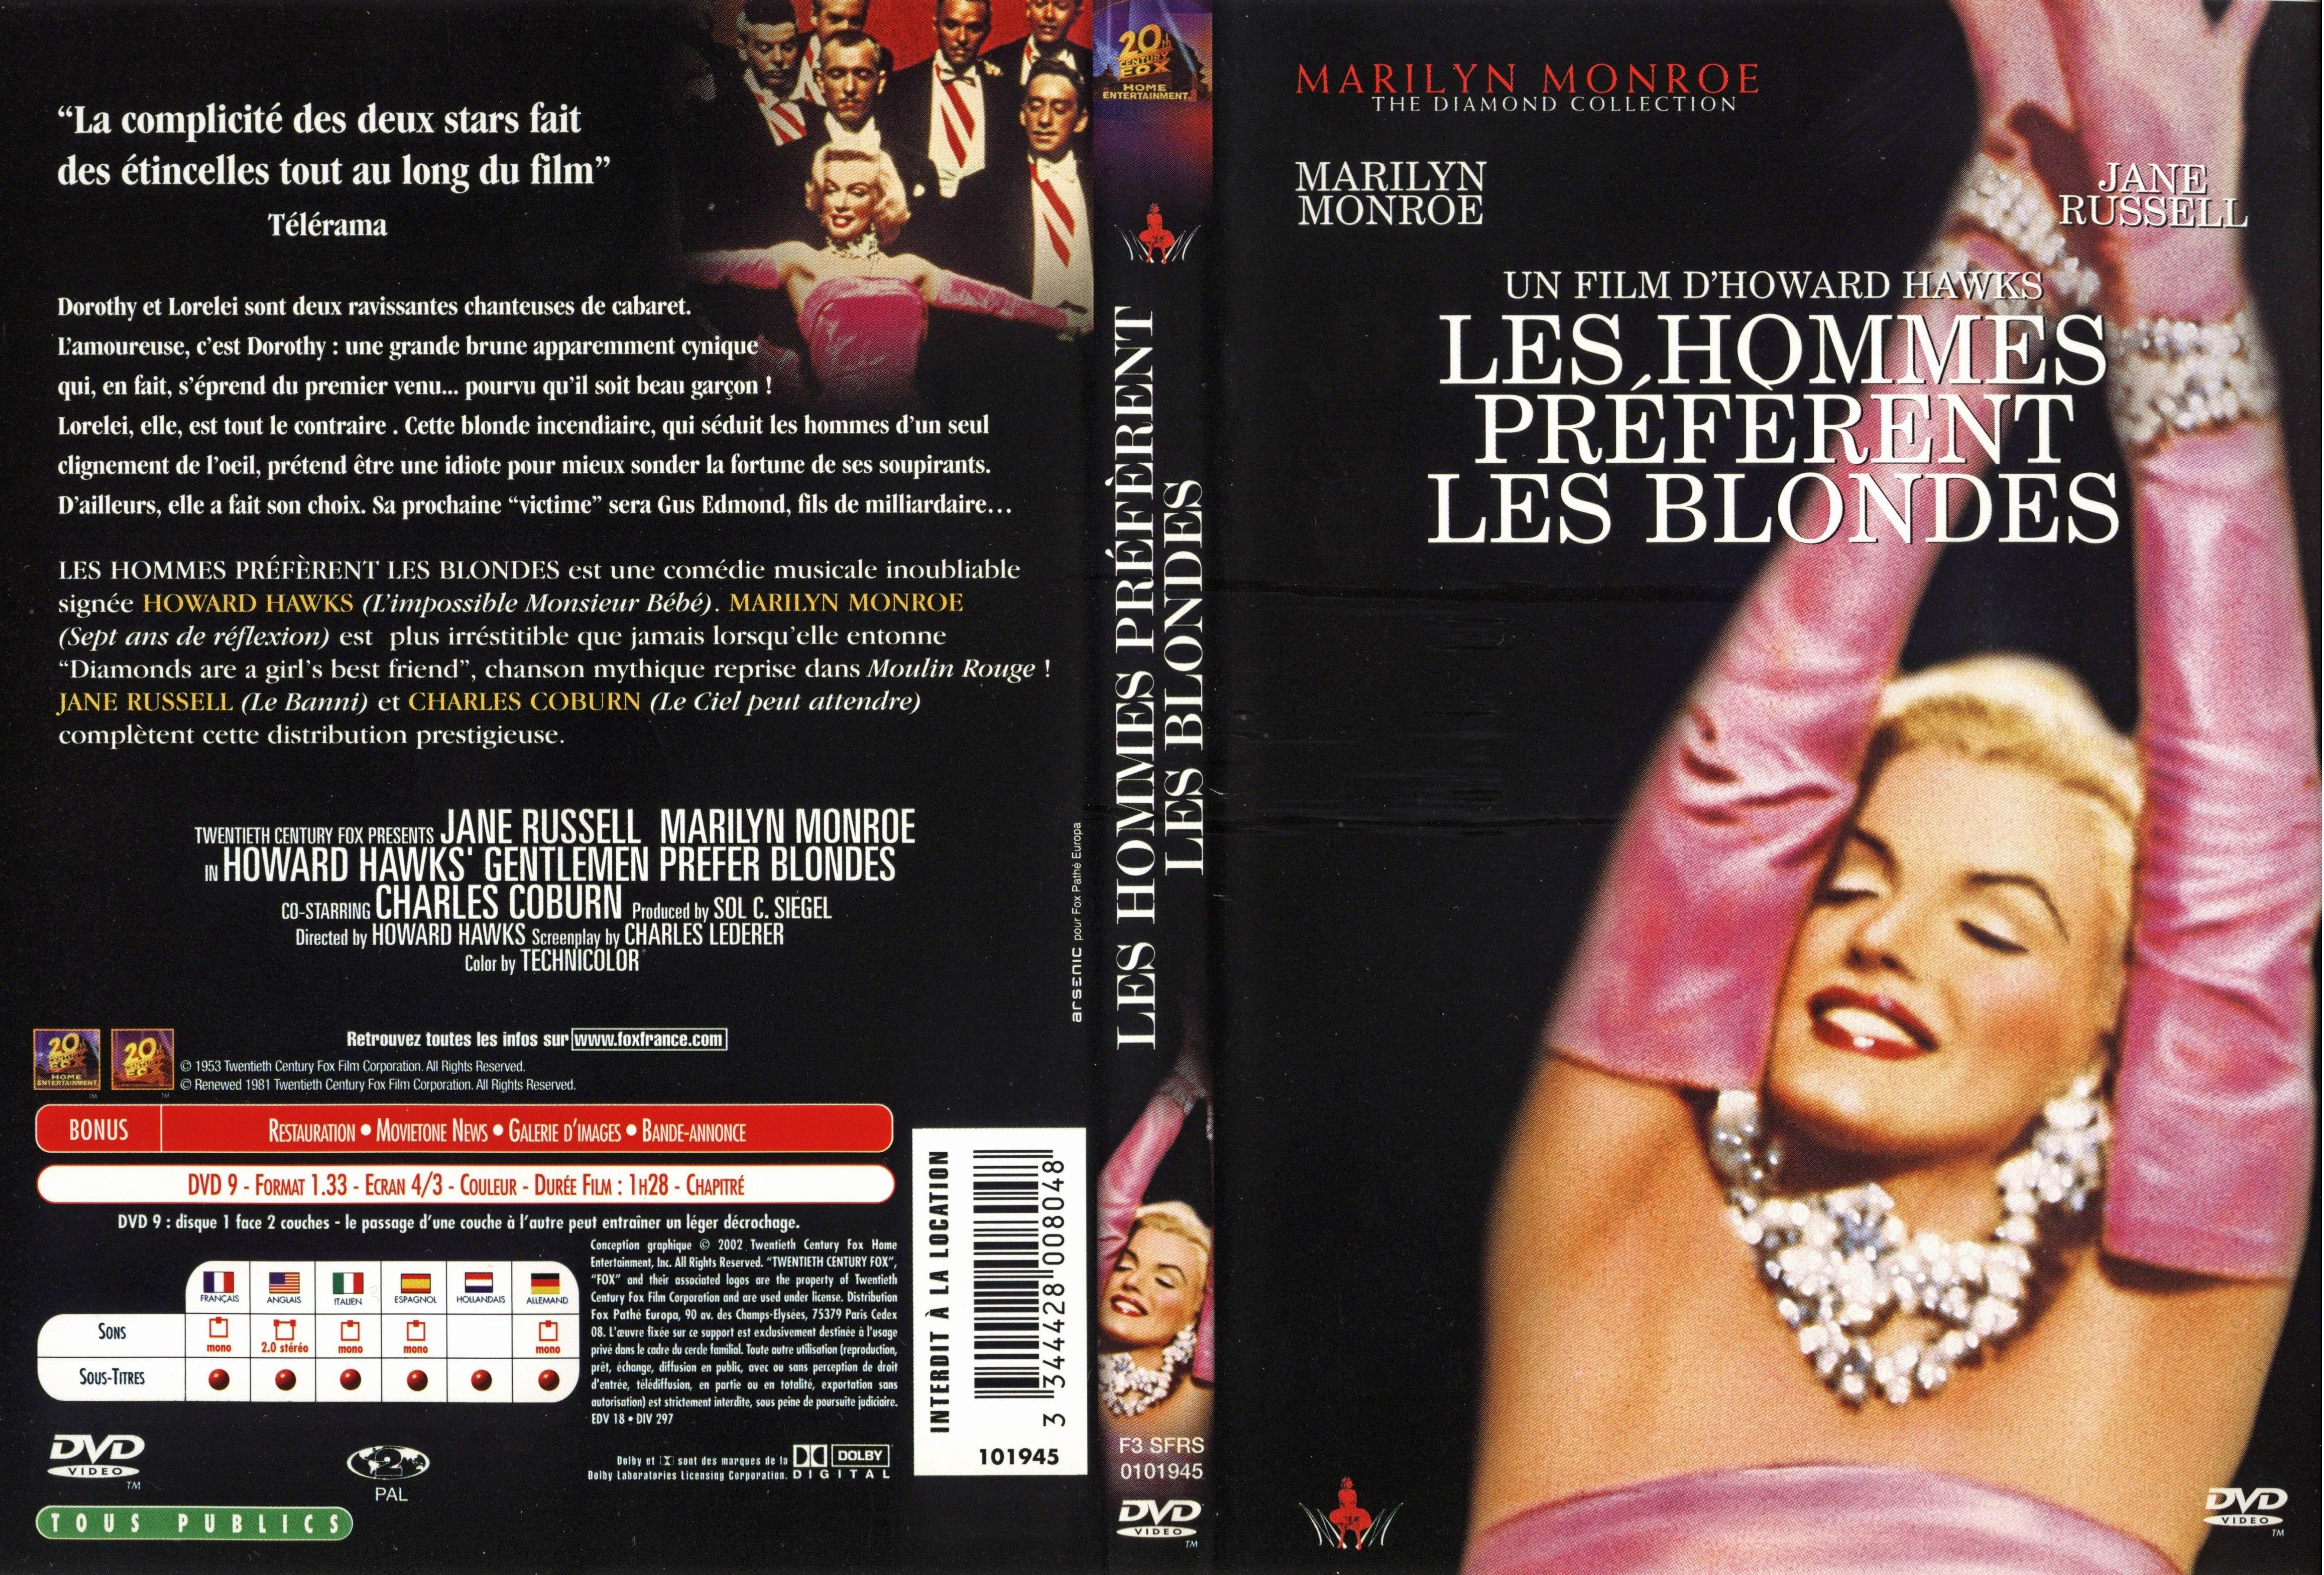 Jaquette DVD Les hommes preferent les blondes